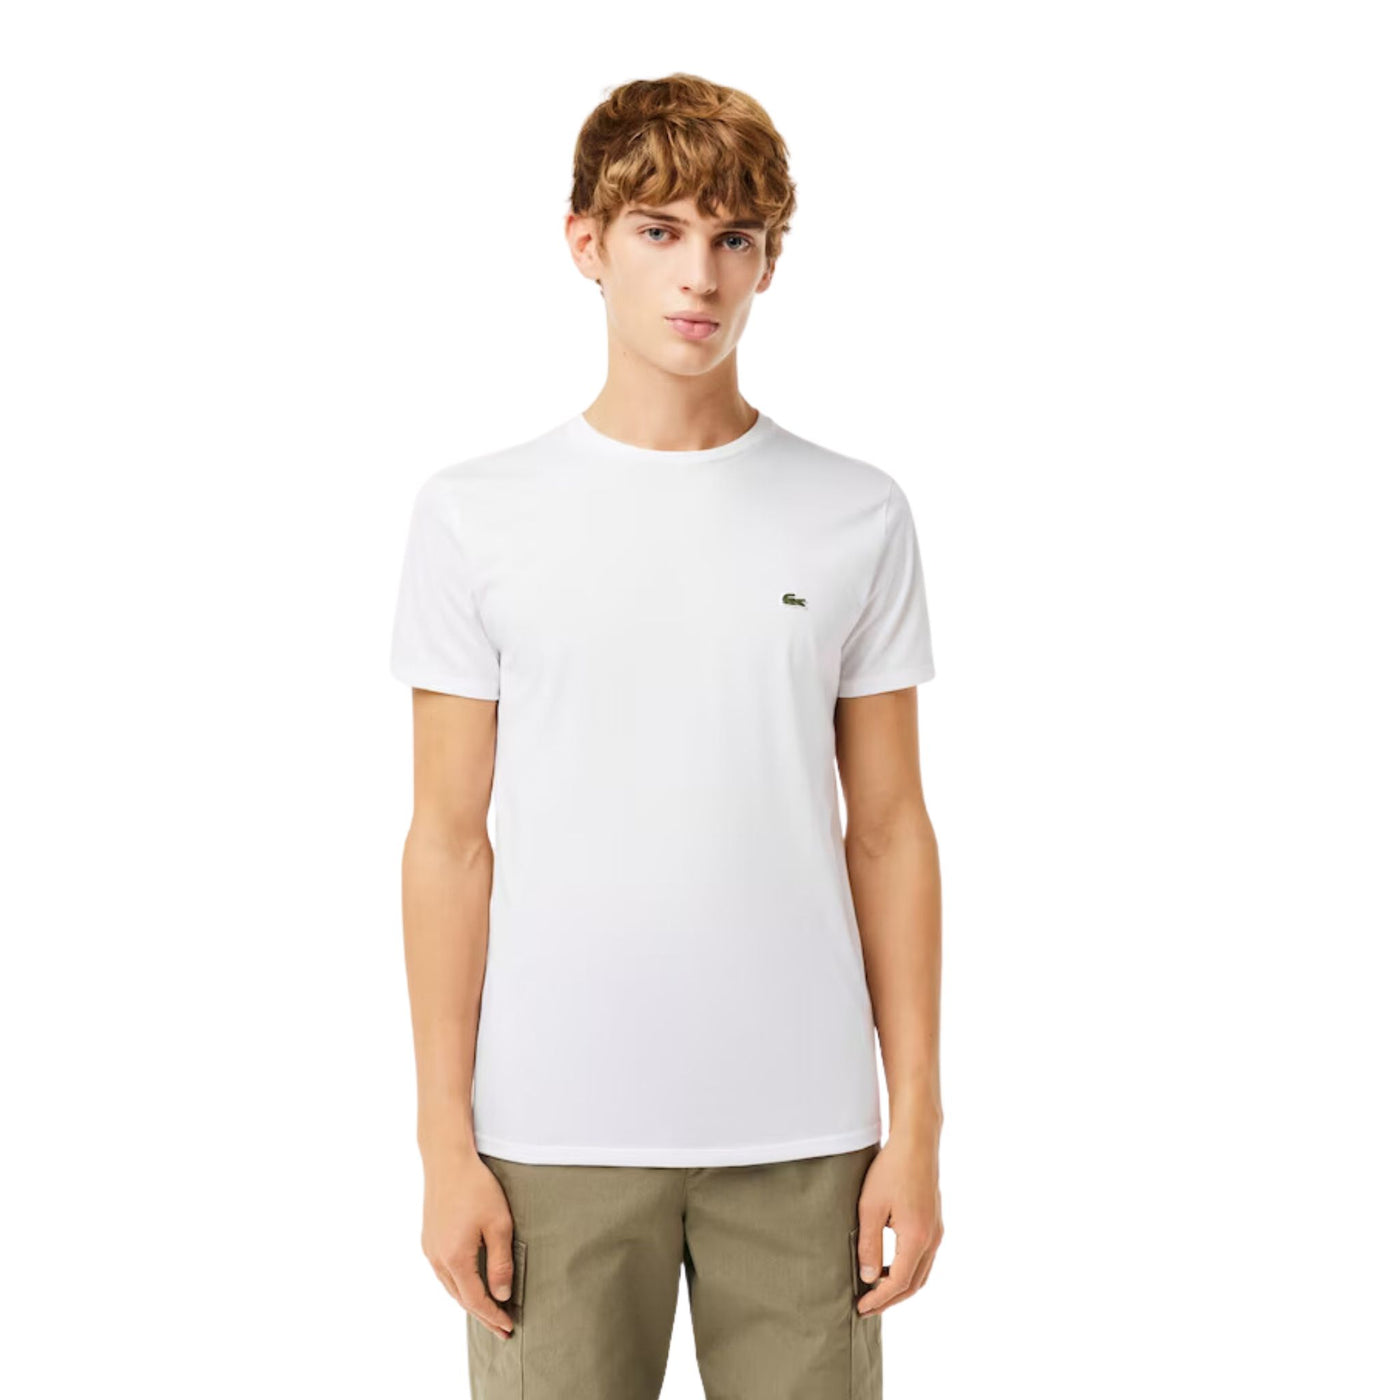 Modello con T-shirt in jersey di cotone Pima con logo ricamato sul petto